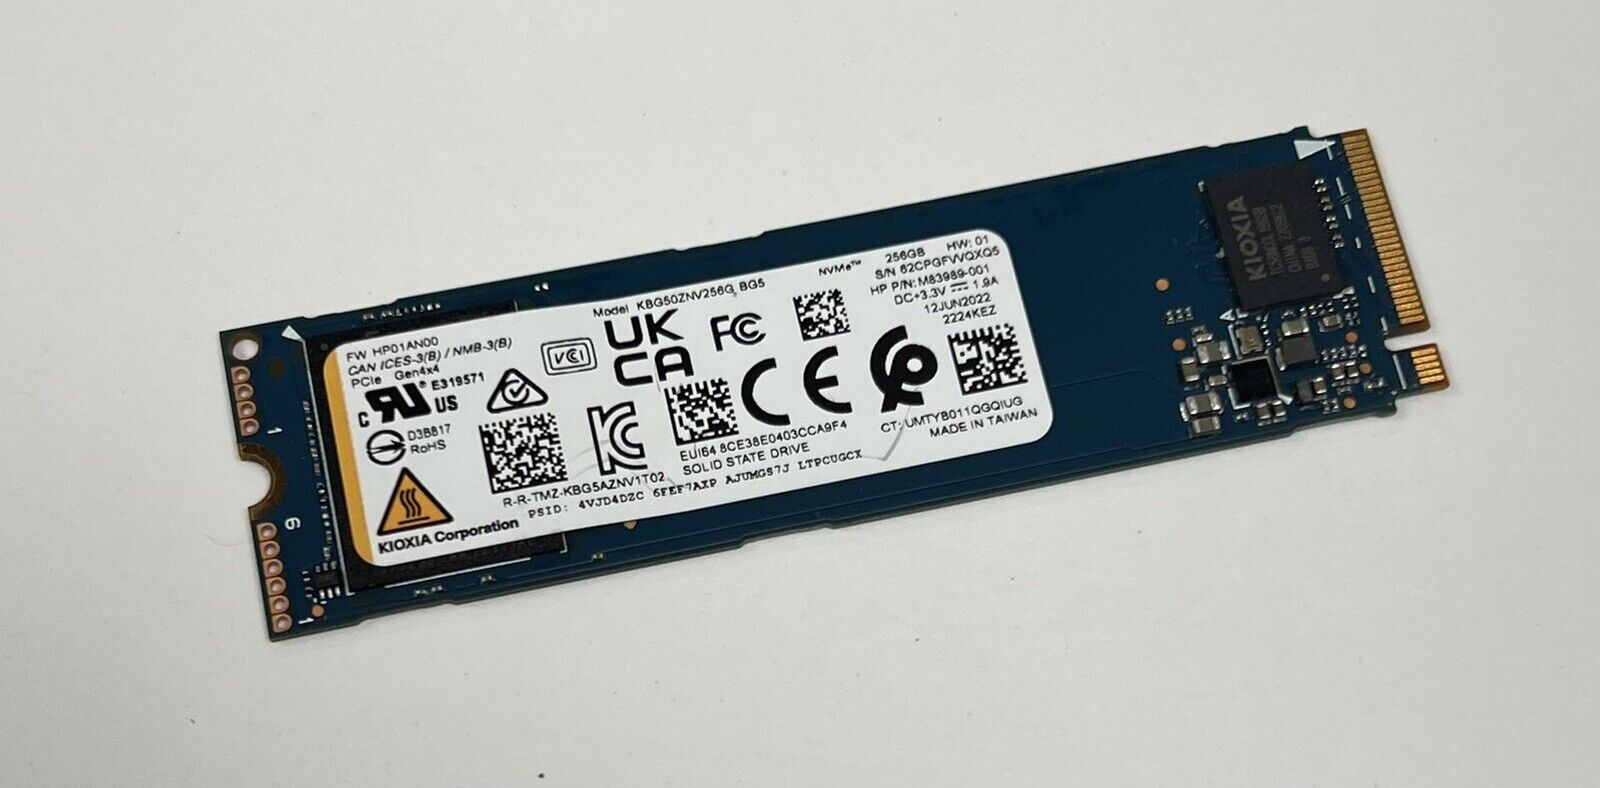 KBG50ZNV256G KIOXIA / Toshiba BG5 256GB M.2 PCIe NVMe Solid State Drive SSD